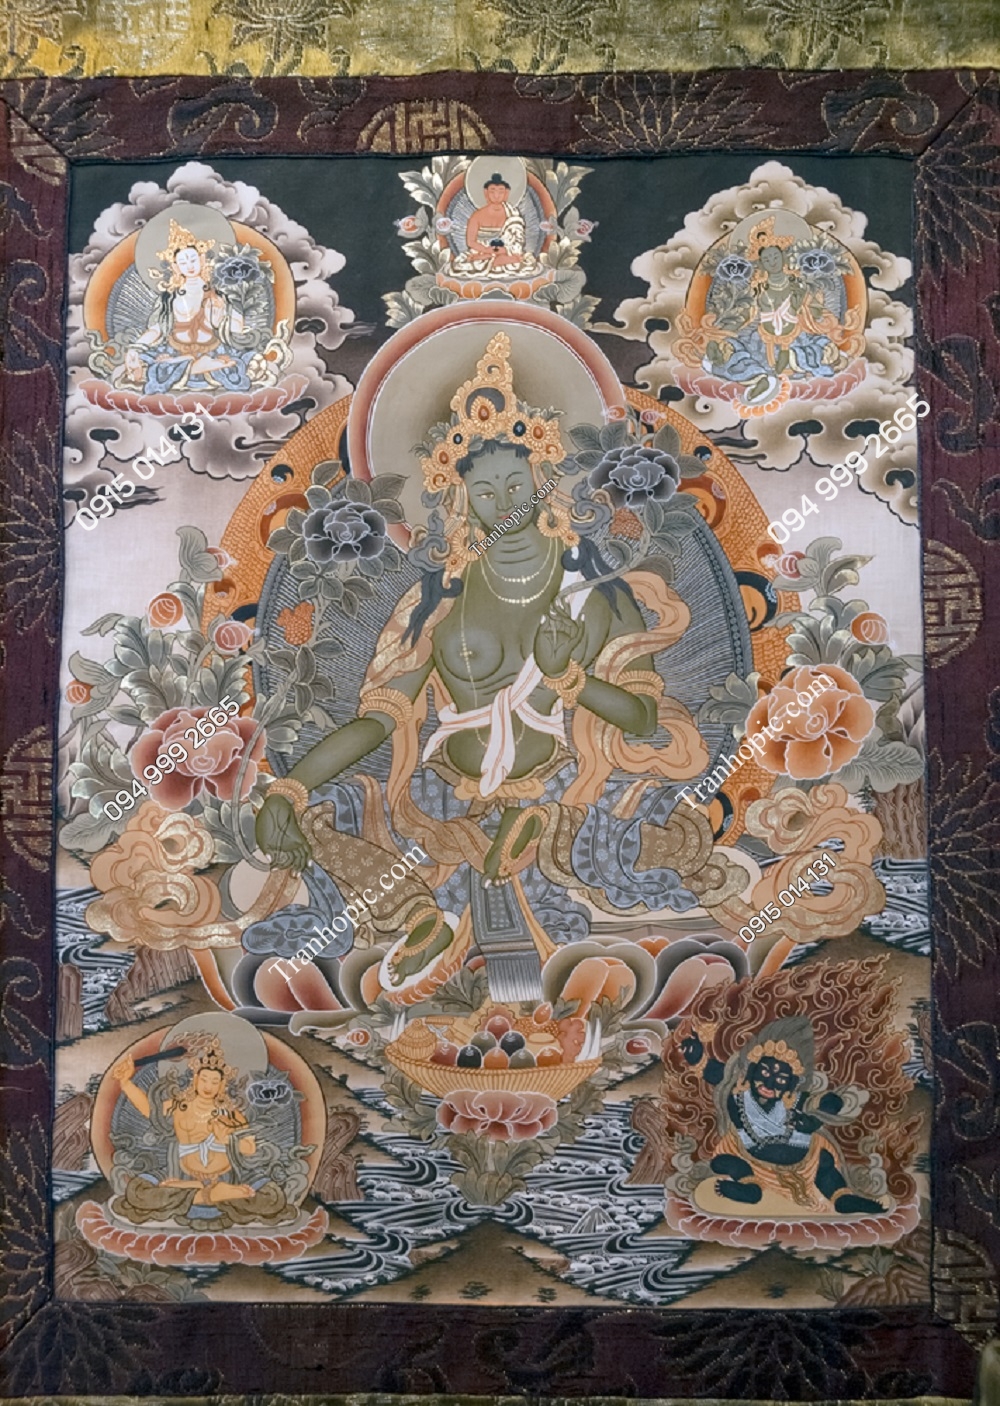 Tranh Thangka Tây Tạng cổ - Phật Mudra, Dharamshala Ấn Độ 200340870